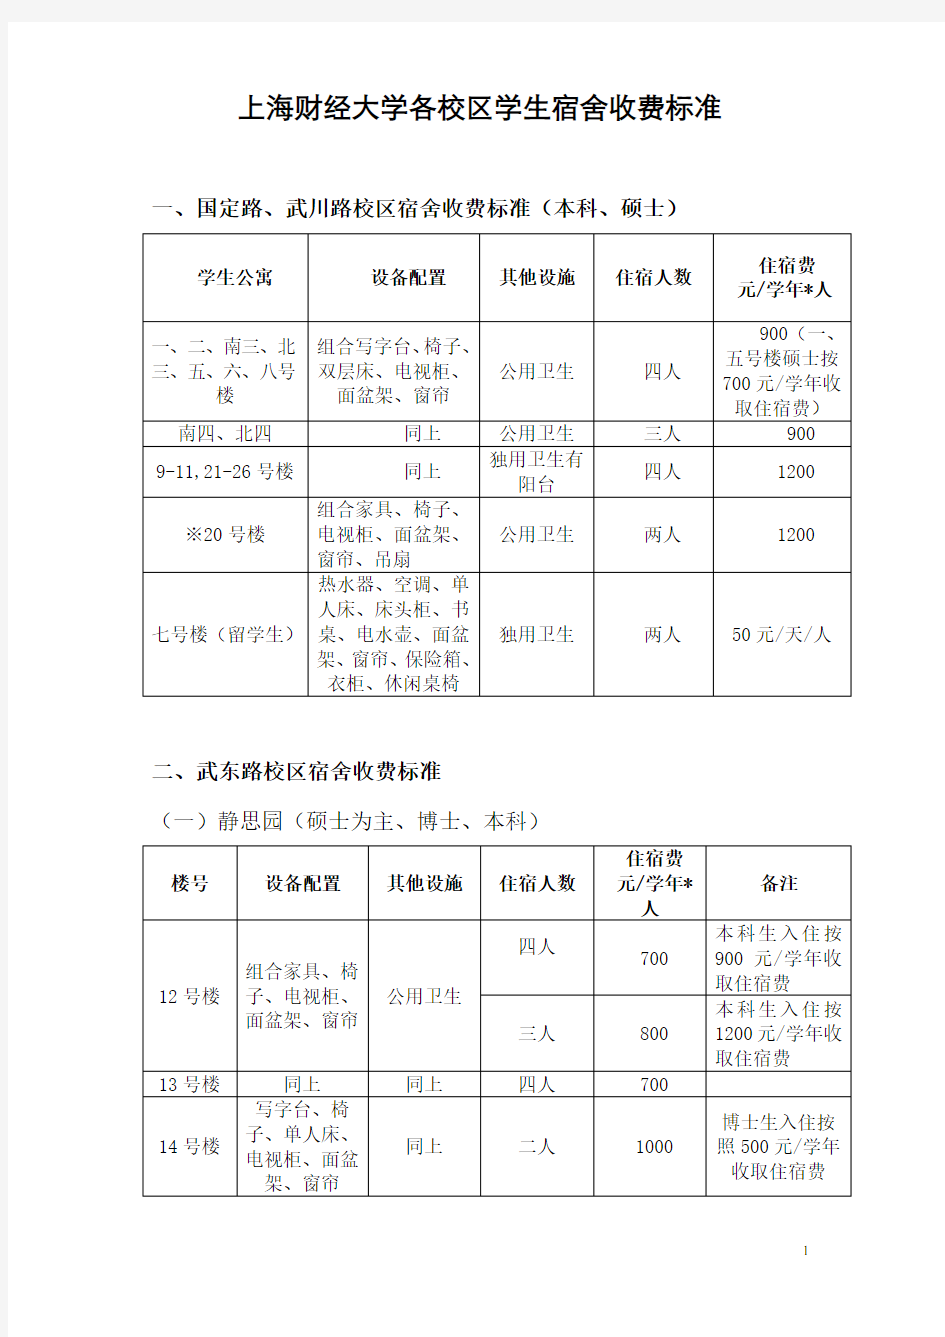 上海财经大学各校区学生宿舍收费标准